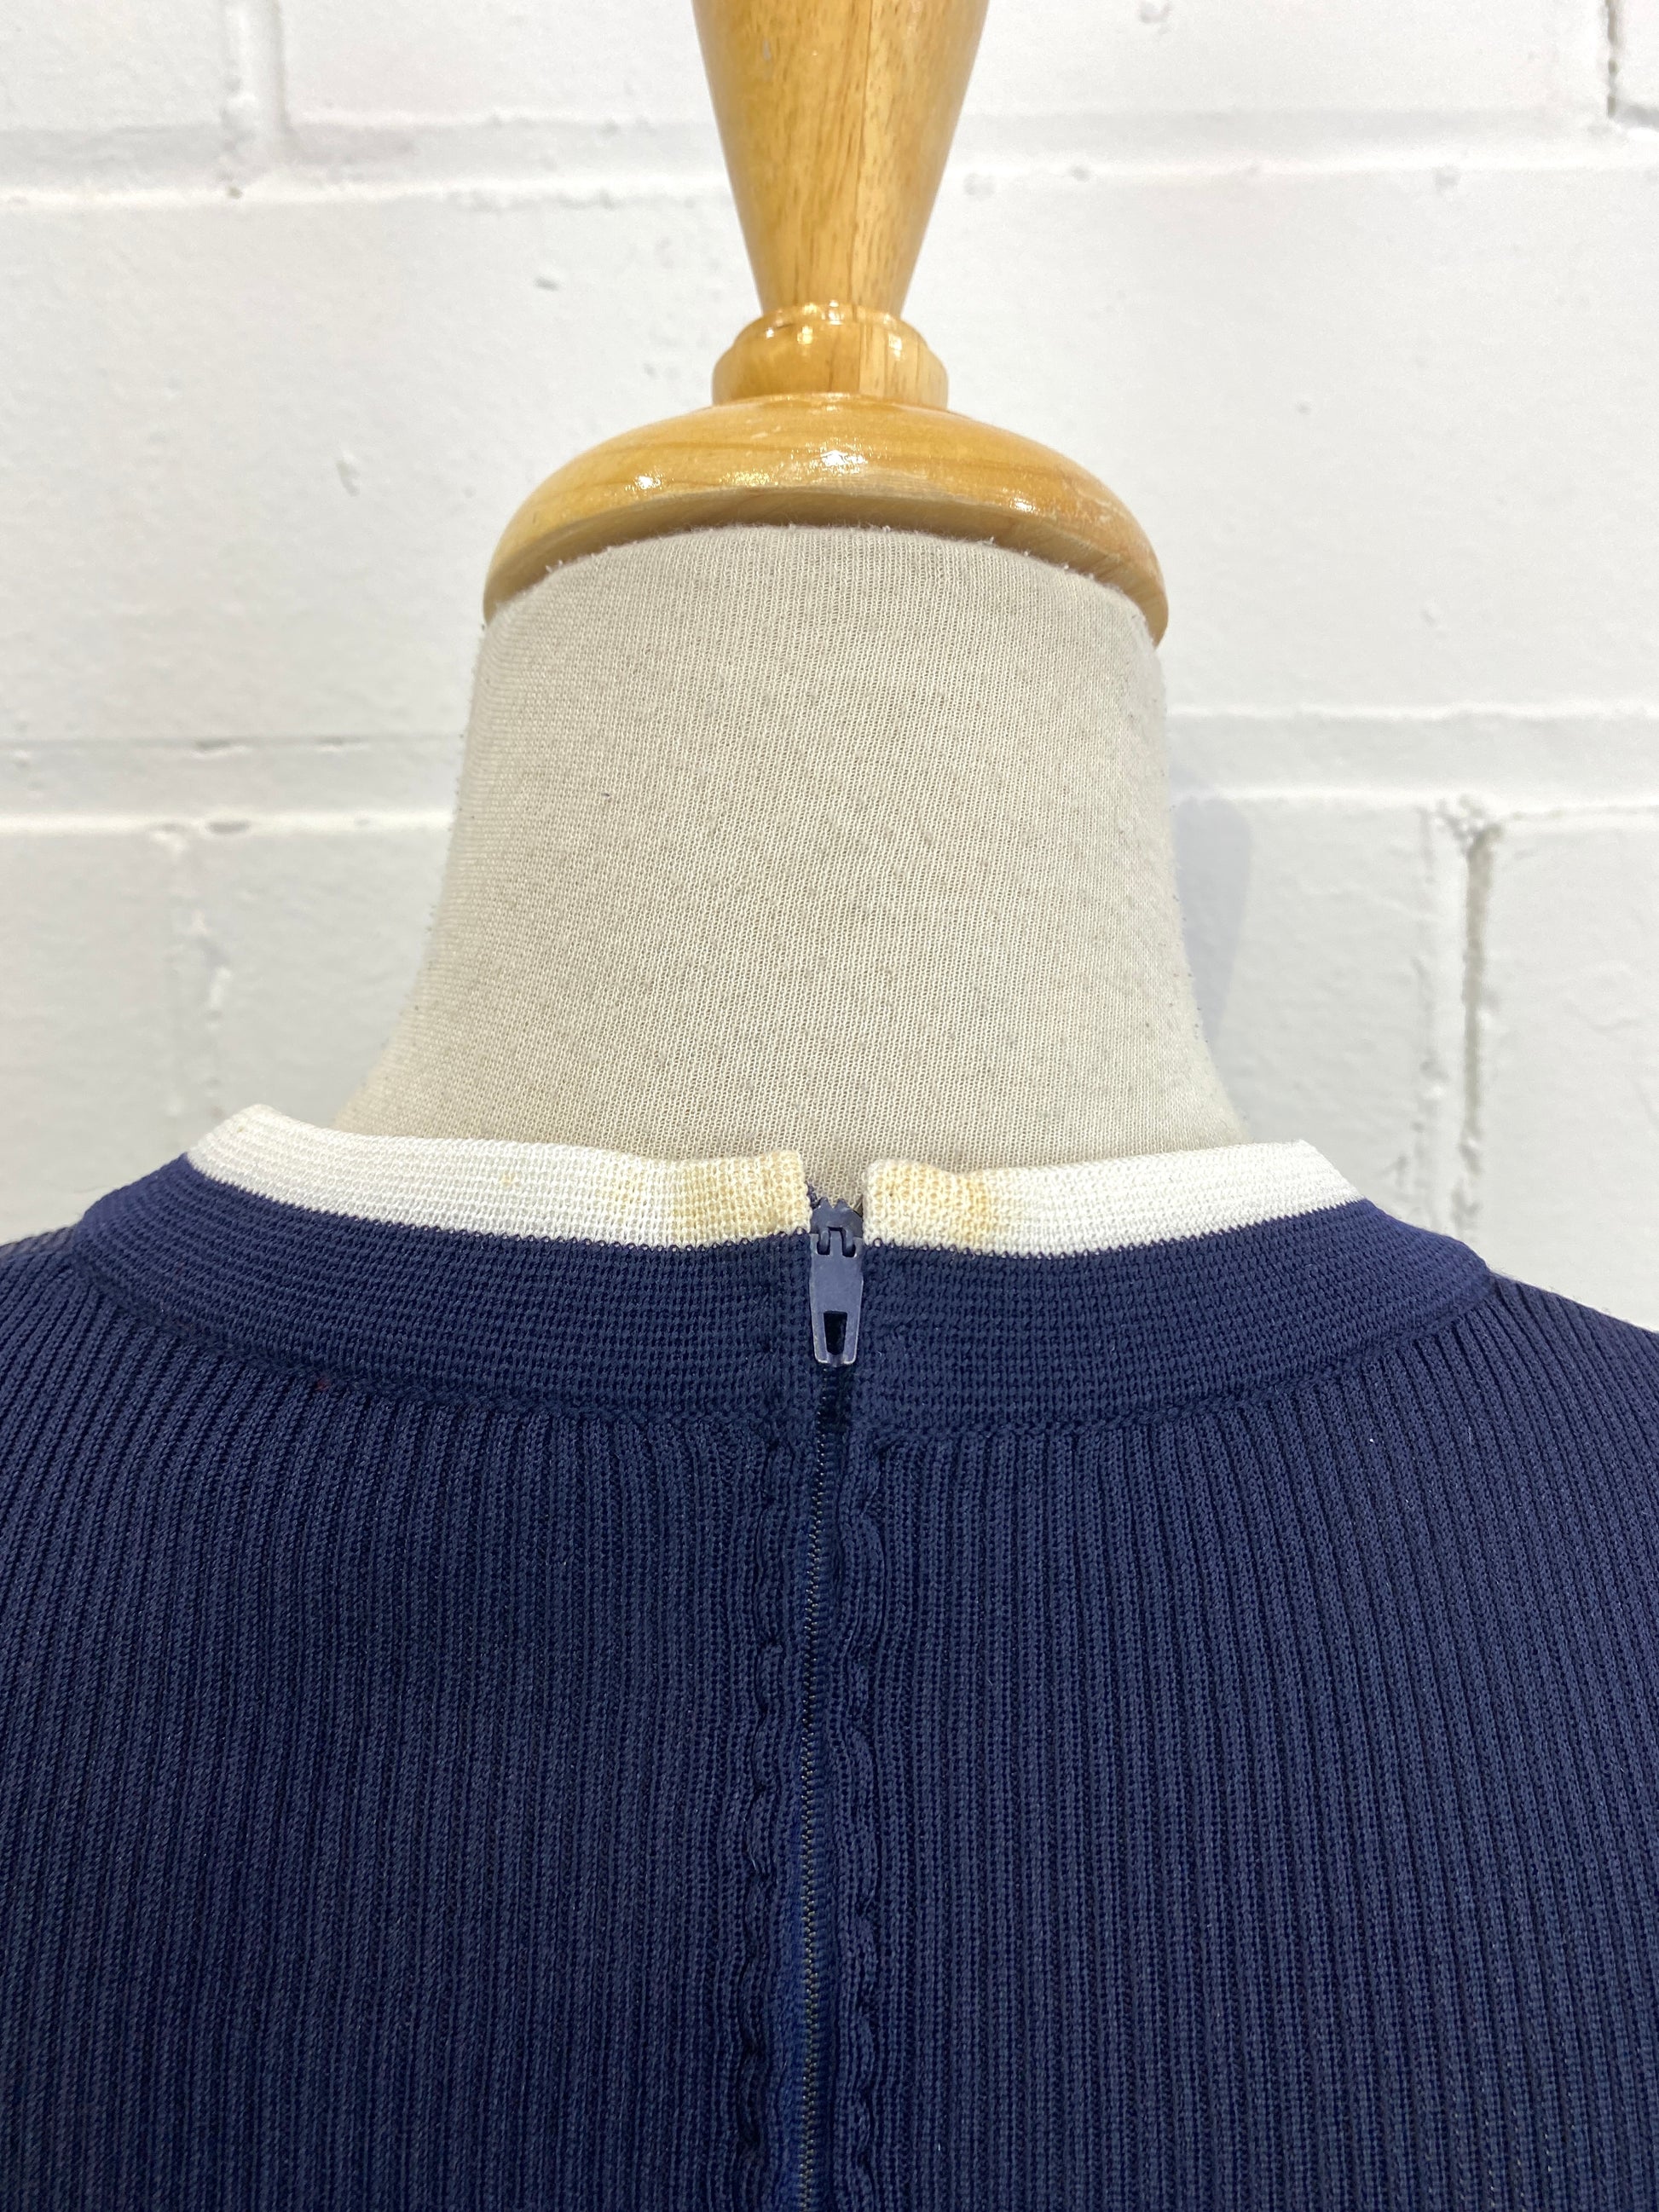 Vintage Deadstock 70s Navy Crissa Short-Sleeve Knit Dress